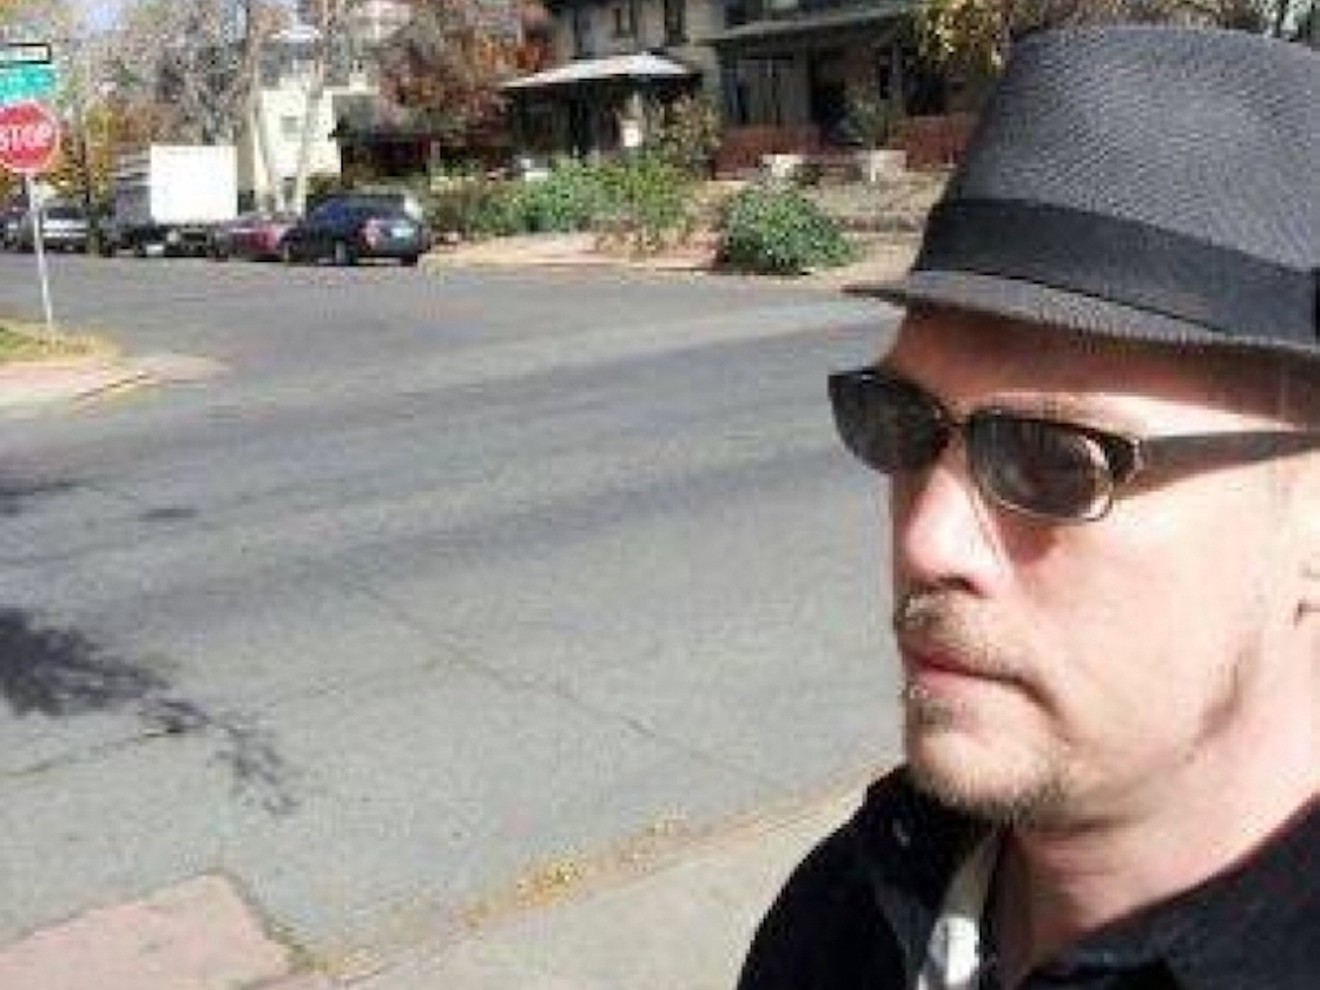 Poet and writer Zack Kopp walks the street of Denver.